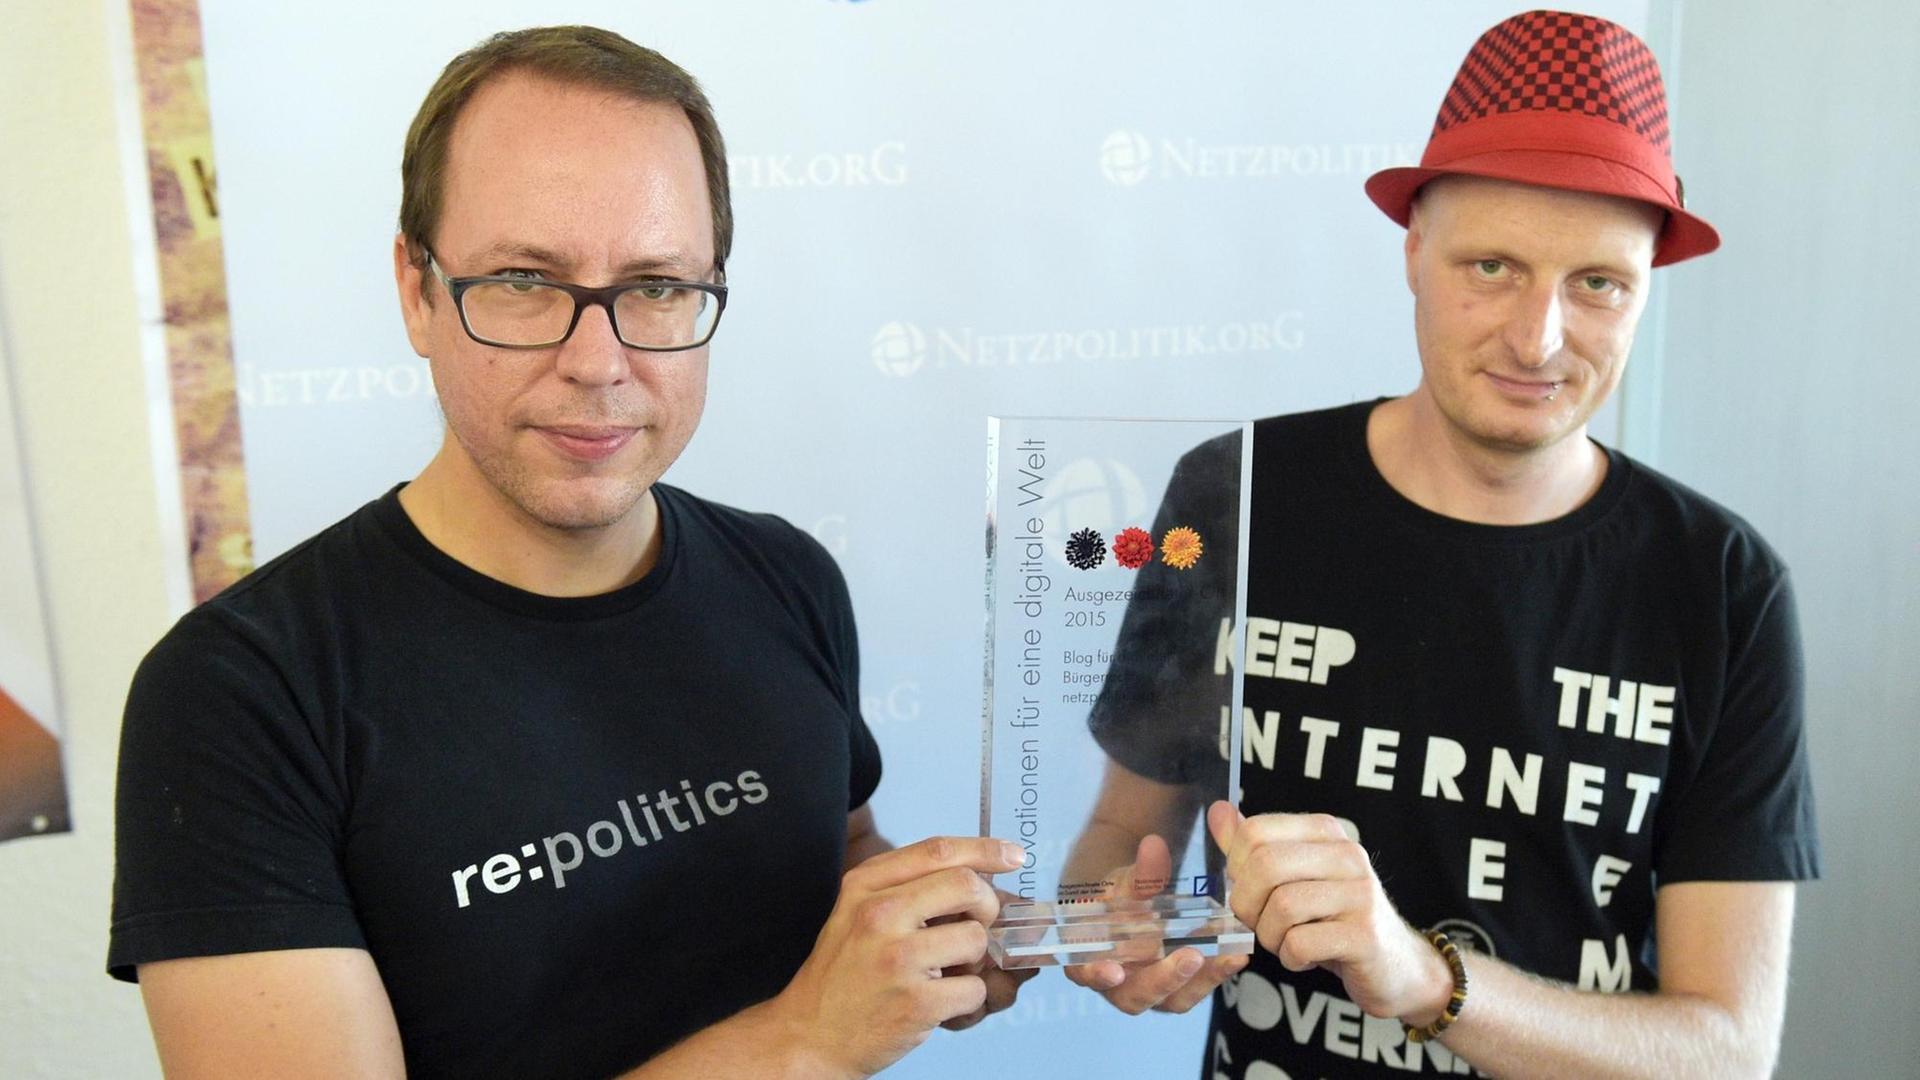 Markus Beckedahl und Andre Meister halten eine gläserne Auszeichnung zwischen sich in die Kamera